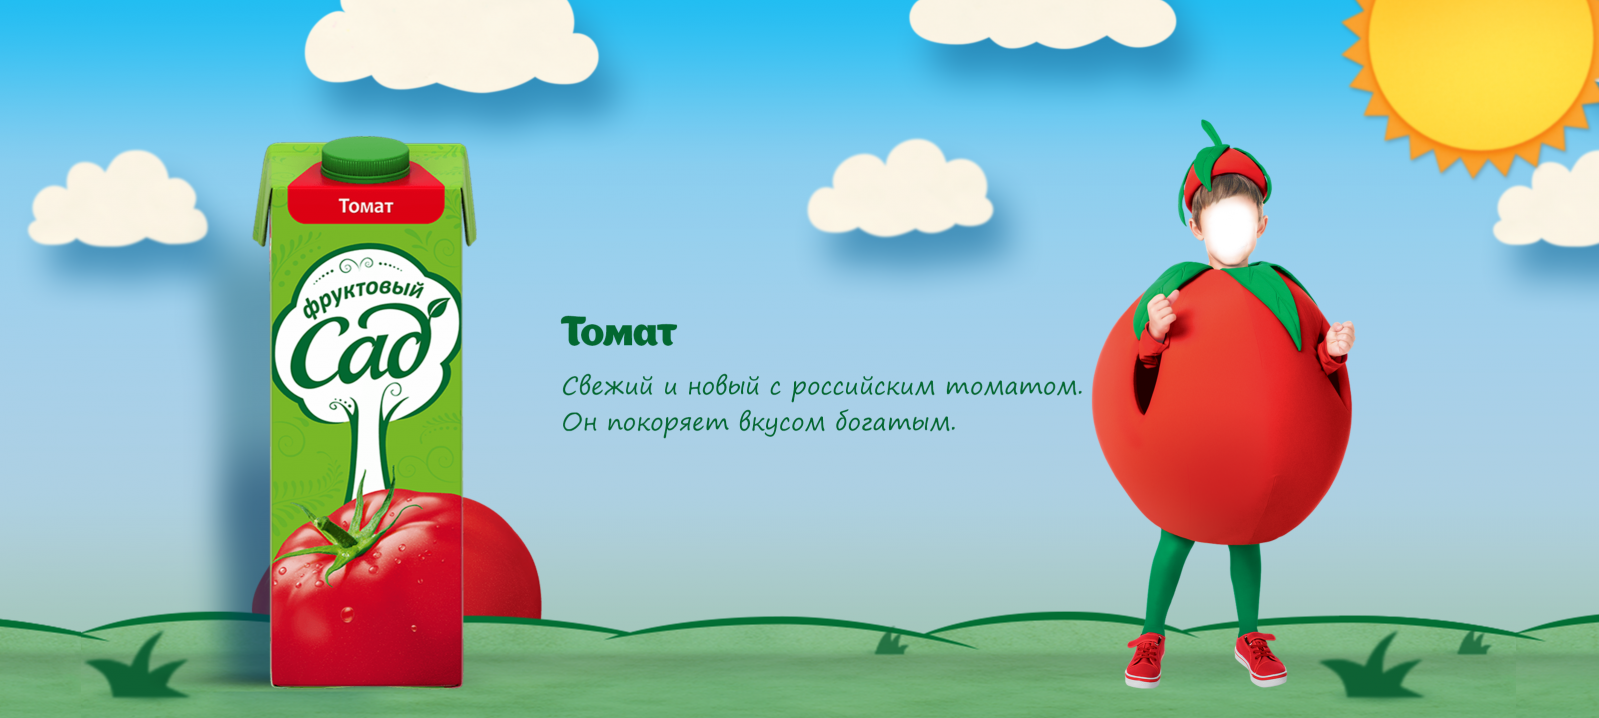 Томат фруктовый сад реклама. Реклама сока а я томат. А Я томат реклама фруктовый сад. Помидор из рекламы фруктовый сад. А я томат реклама